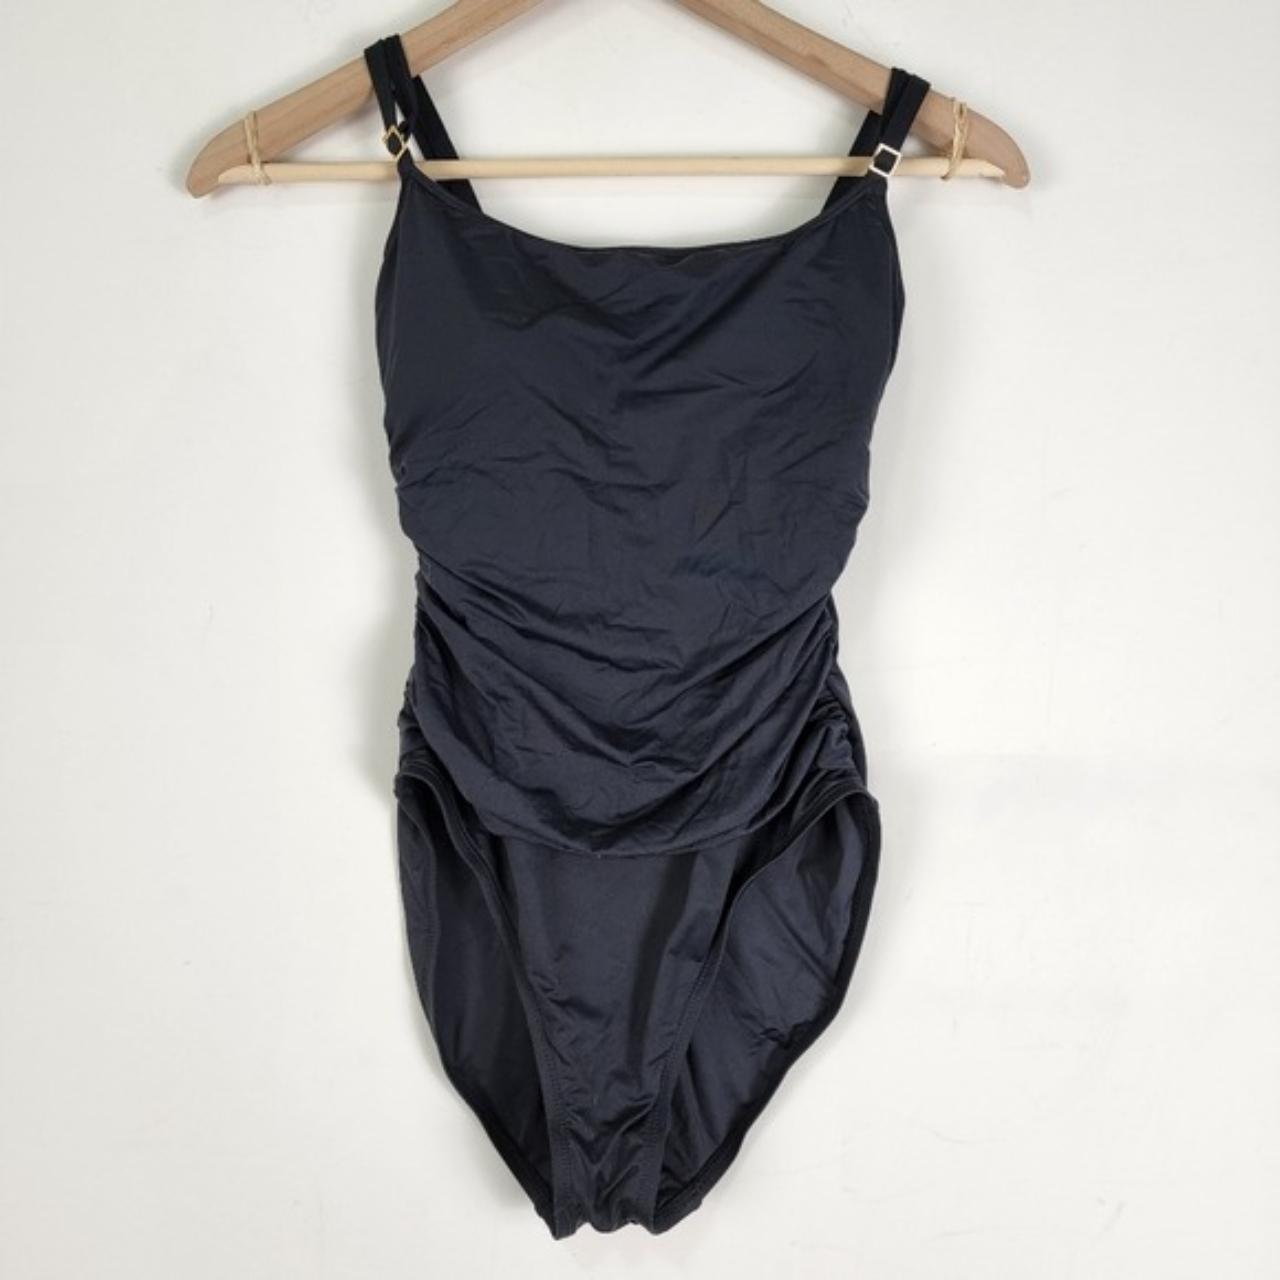 La blanca one piece swimsuit Sz 6 black swimwear... - Depop